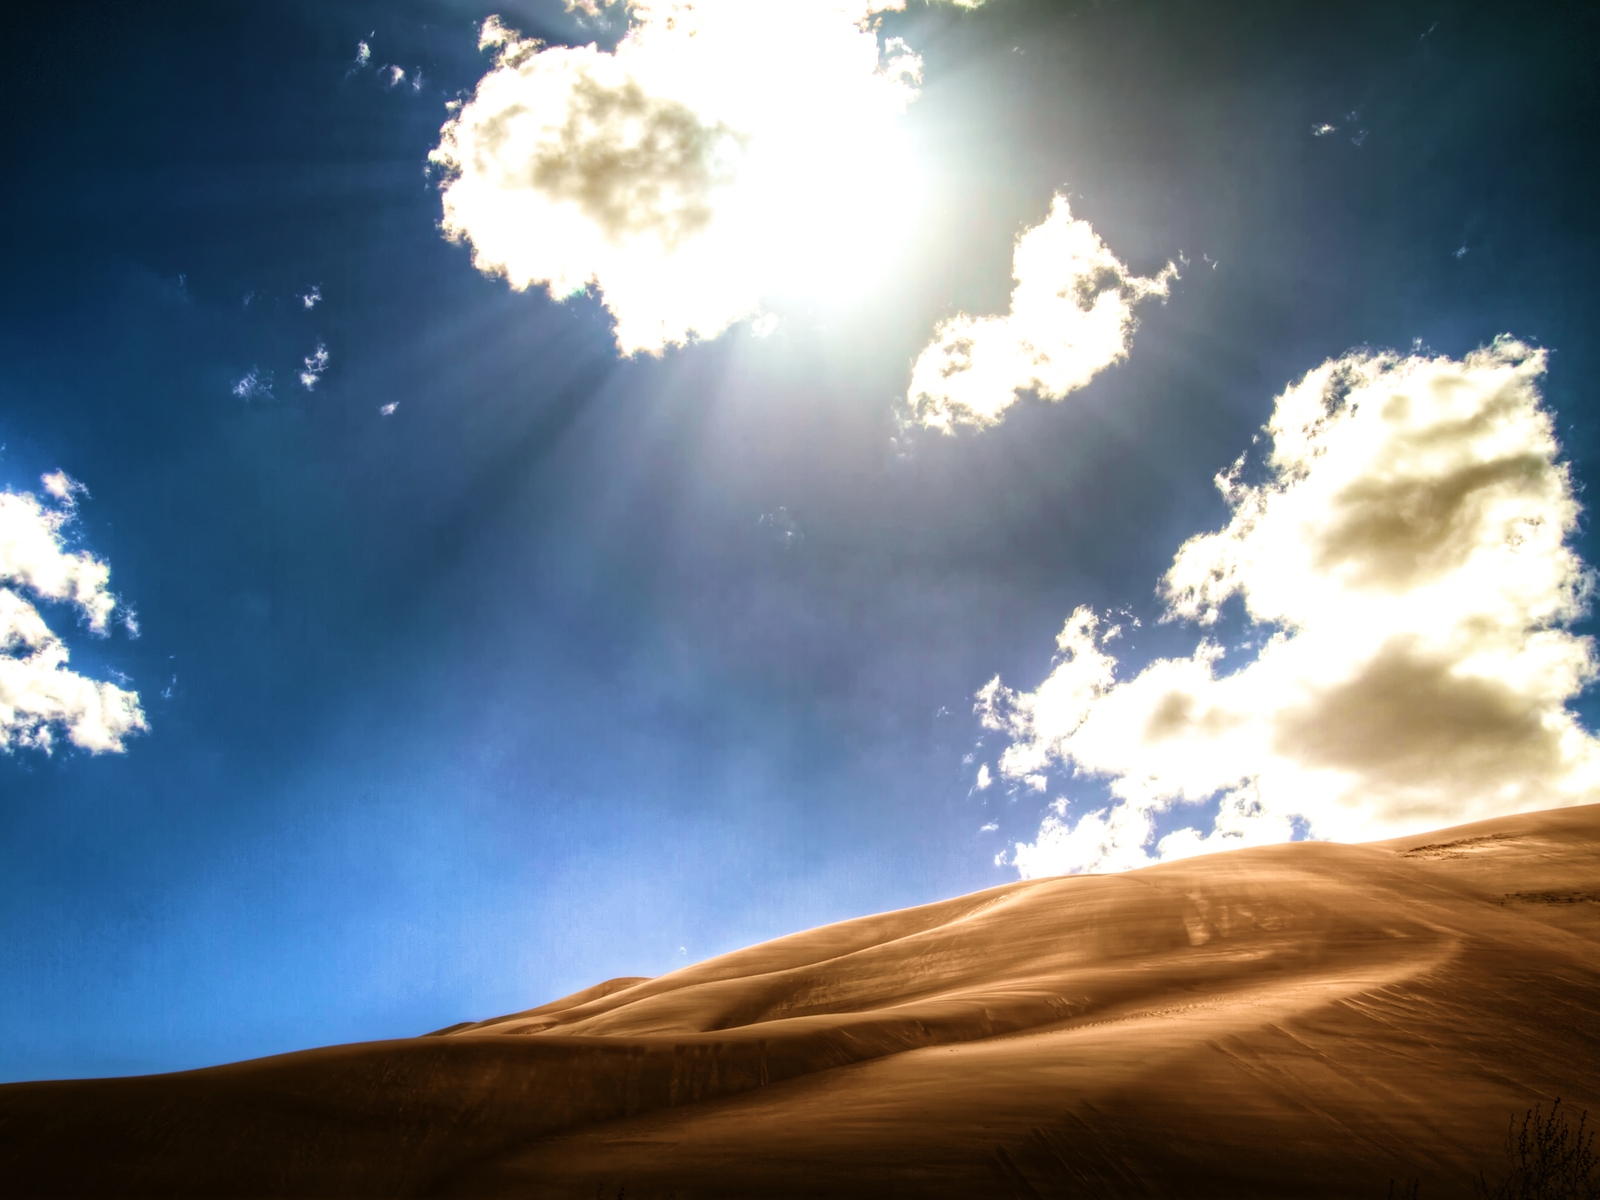 Bright Desert for 1600 x 1200 resolution